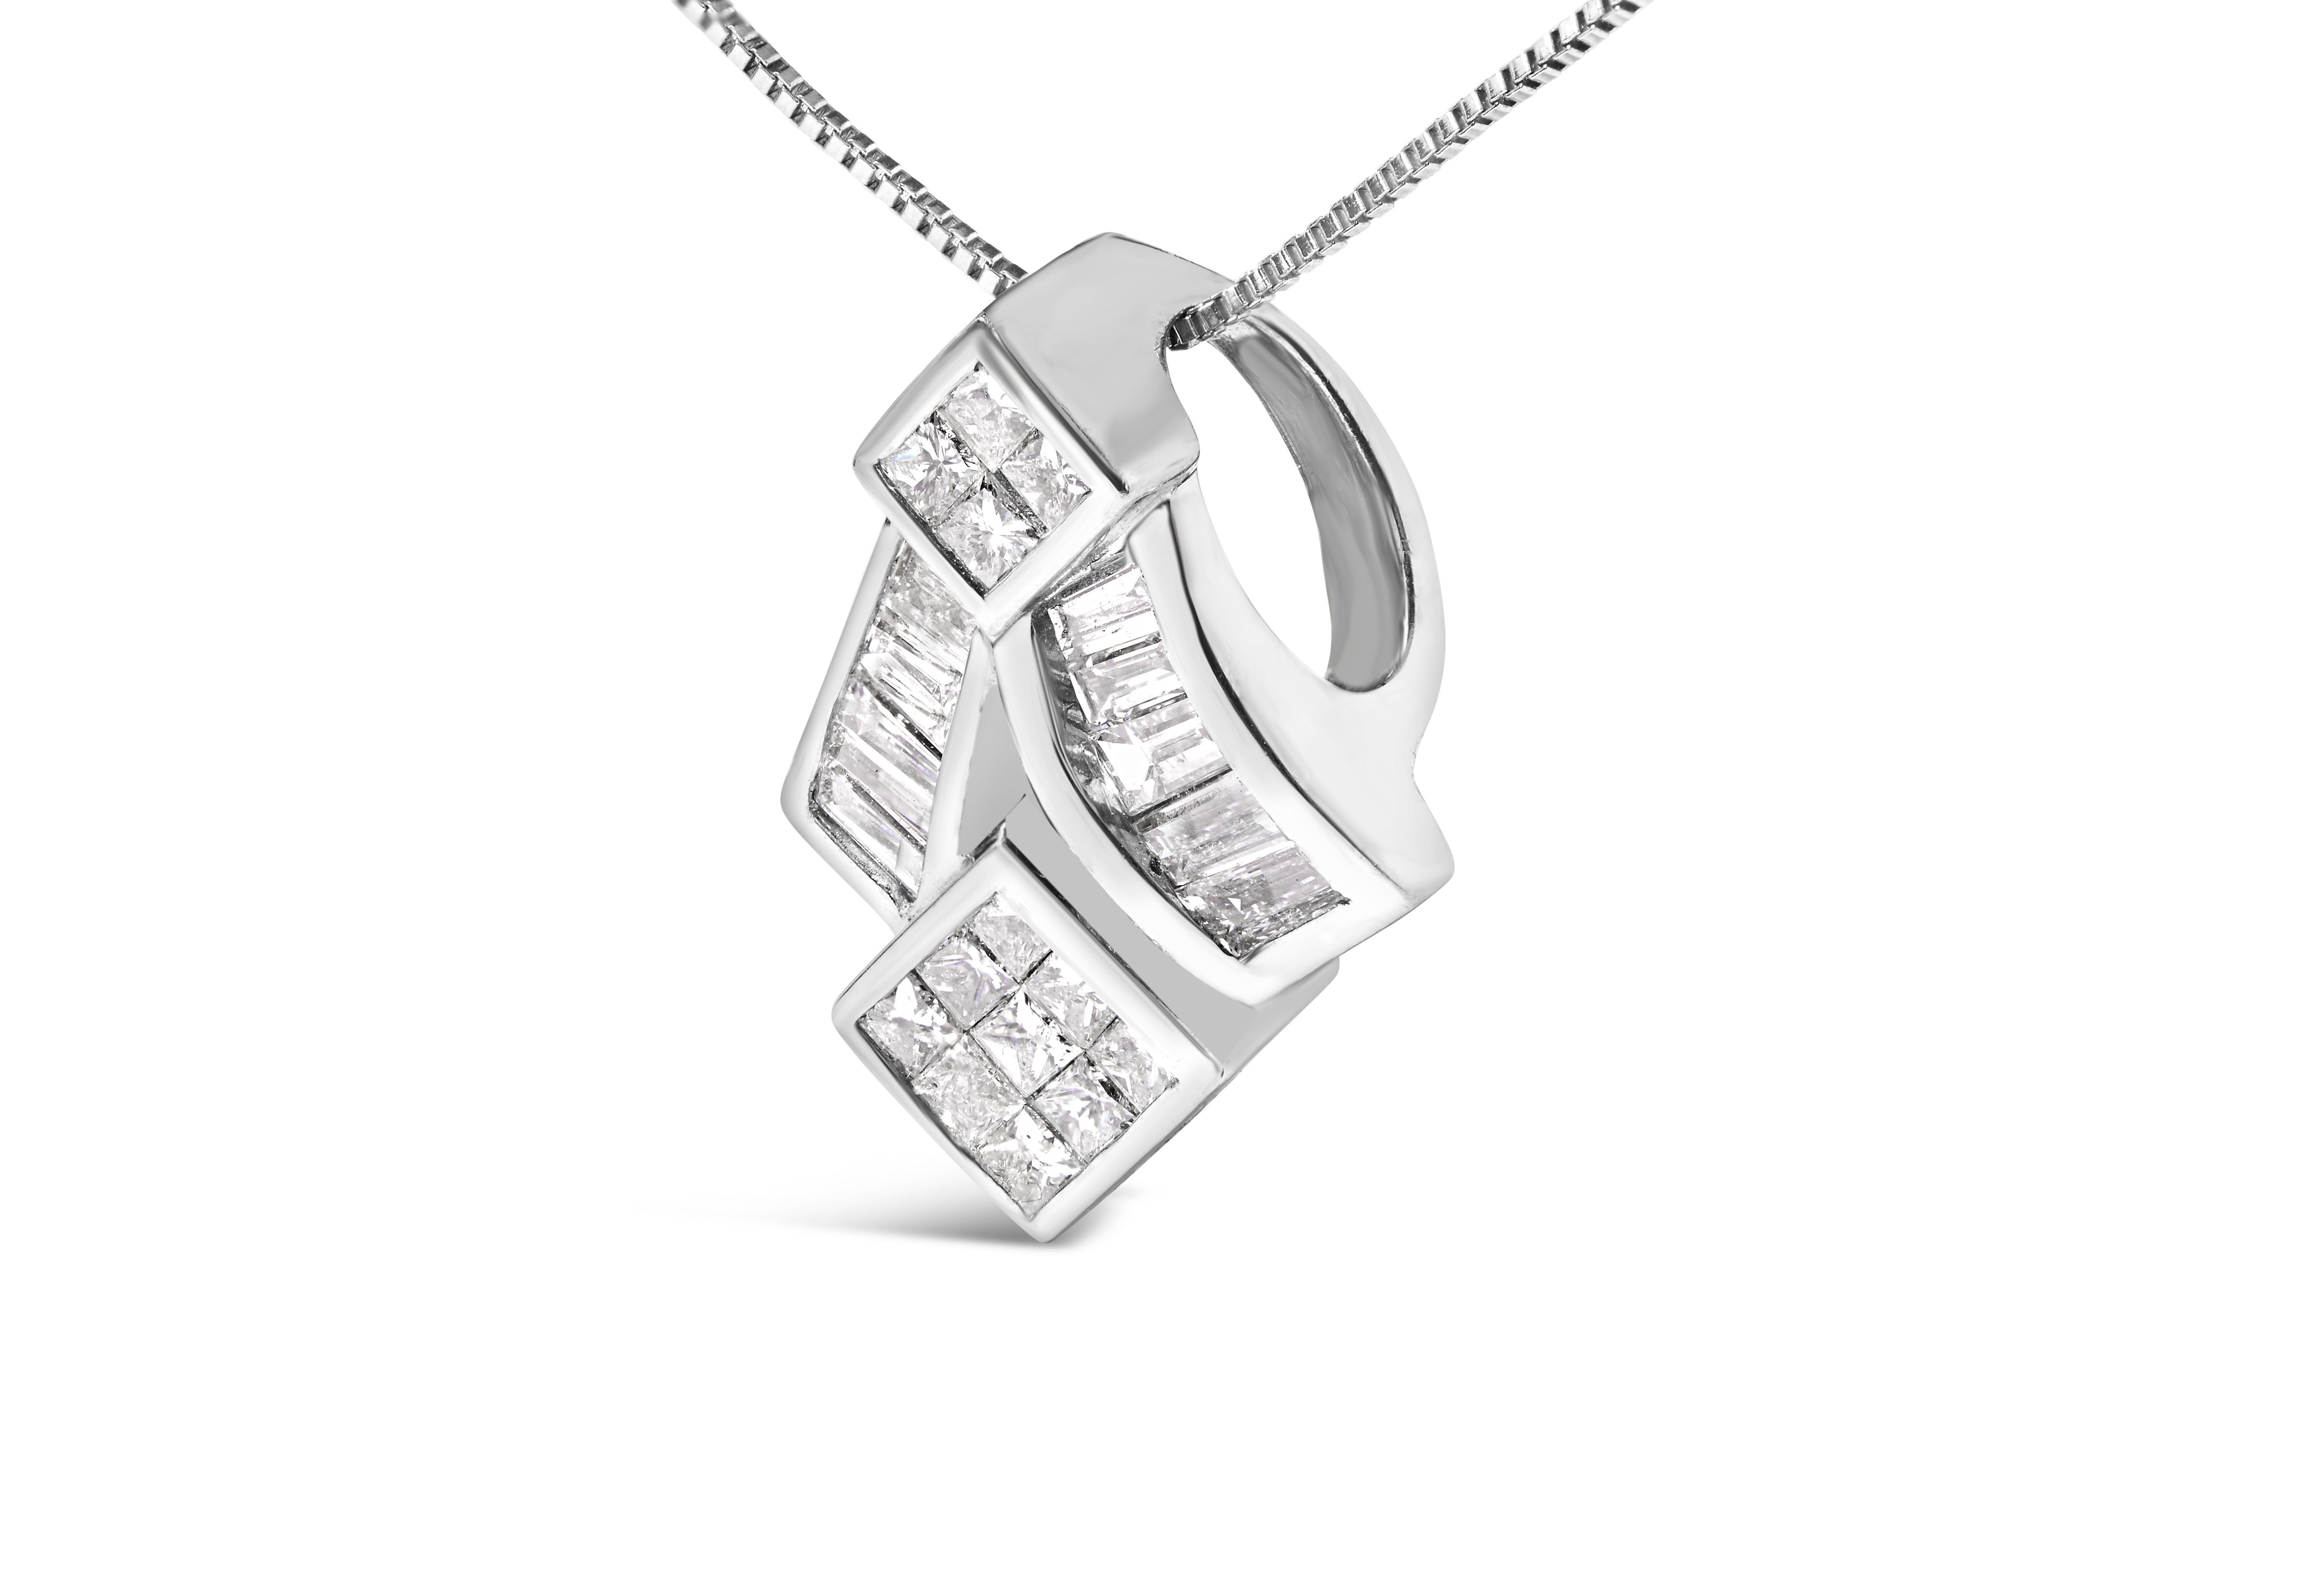 Baguette Cut 14k White Gold 1 5/8 Carat Princess-Cut Diamond Mixed Shape Pendant Necklace For Sale